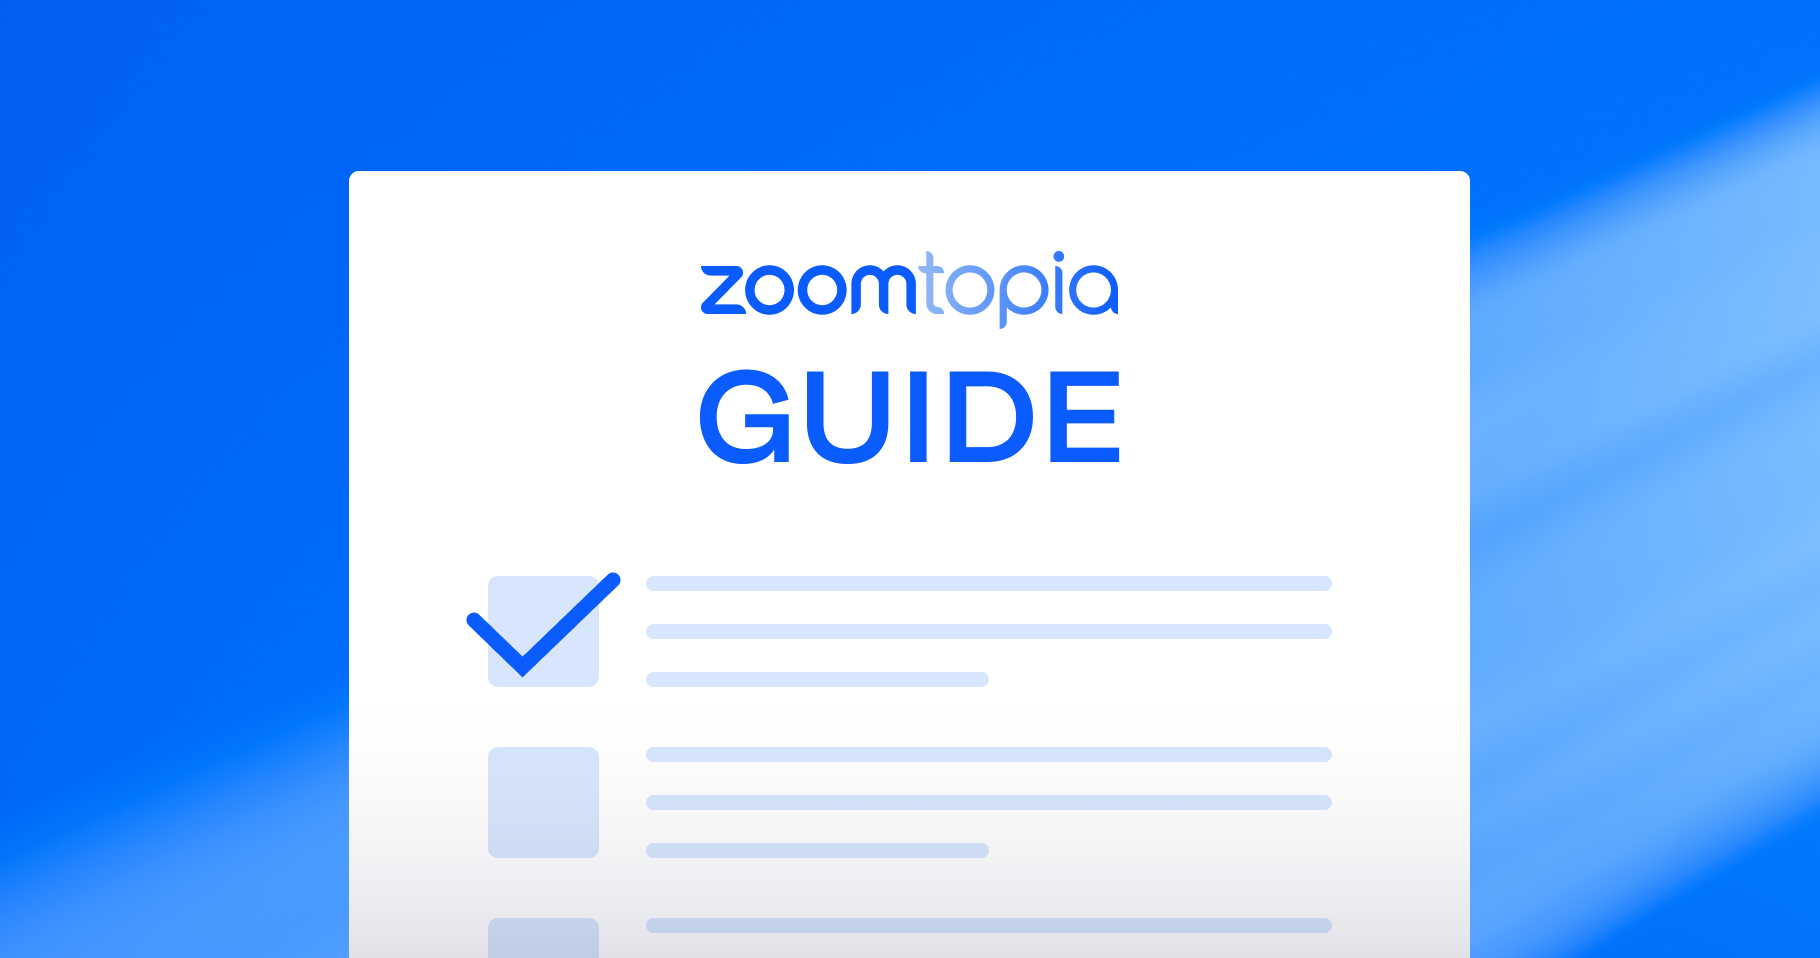 Tham dự Zoomtopia 2023 trực tiếp hay trực tuyến? Tìm hiểu thông tin cần thiết dưới đây trước khi tham dự